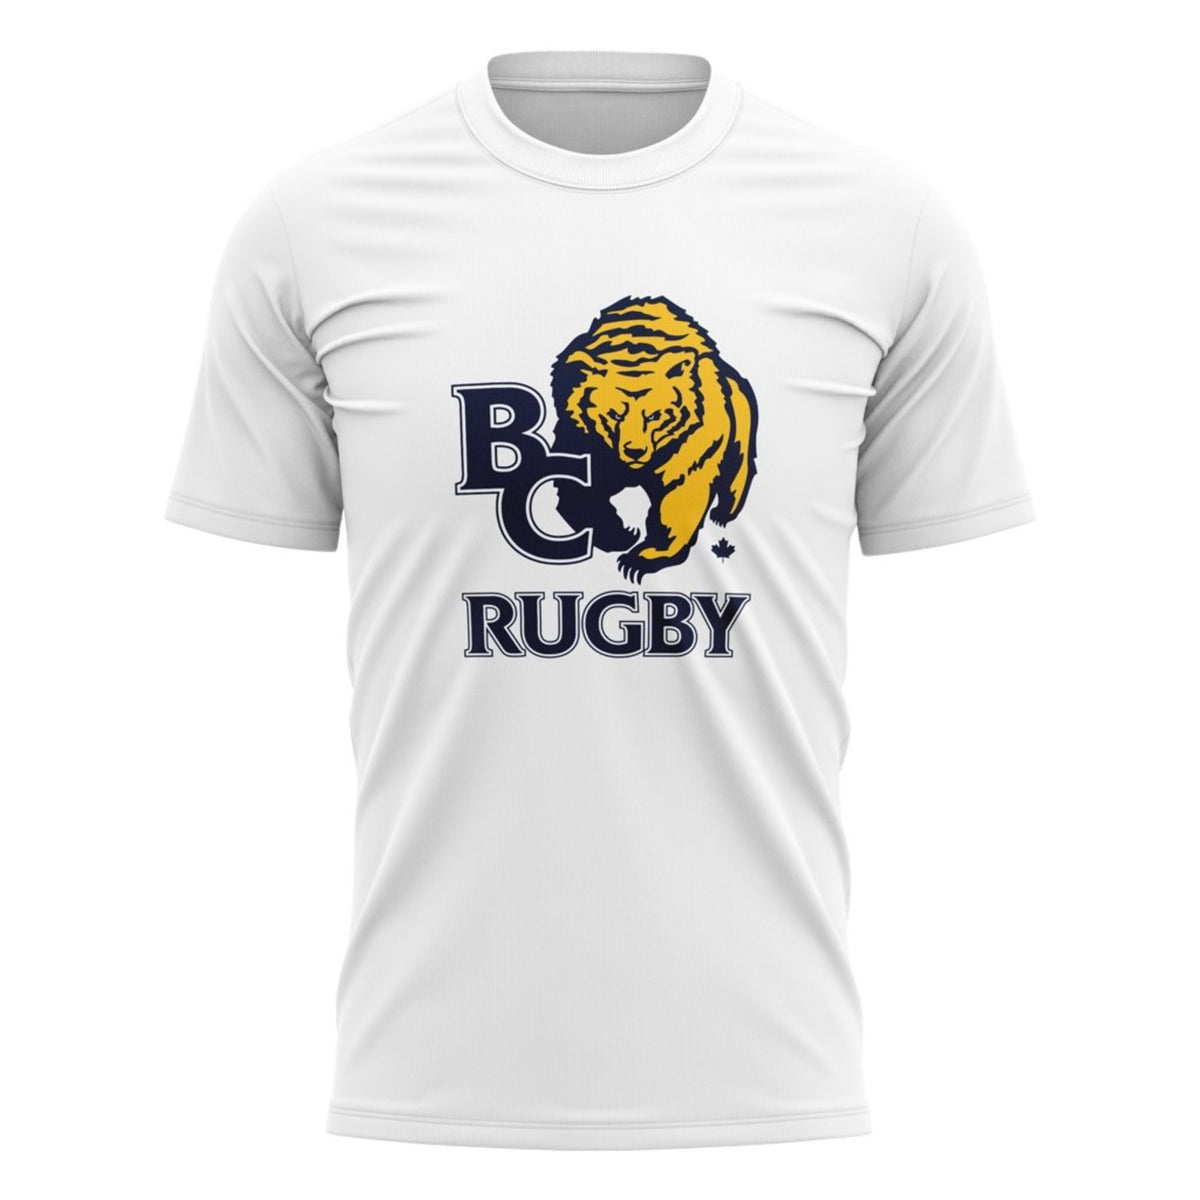 BC Rugby 2021 &quot;Team&quot; Tee - Men&#39;s Navy/Grey/White/Gold - www.therugbyshop.com www.therugbyshop.com MEN&#39;S / WHITE / S XIX Brands TEES BC Rugby 2021 &quot;Team&quot; Tee - Men&#39;s Navy/Grey/White/Gold